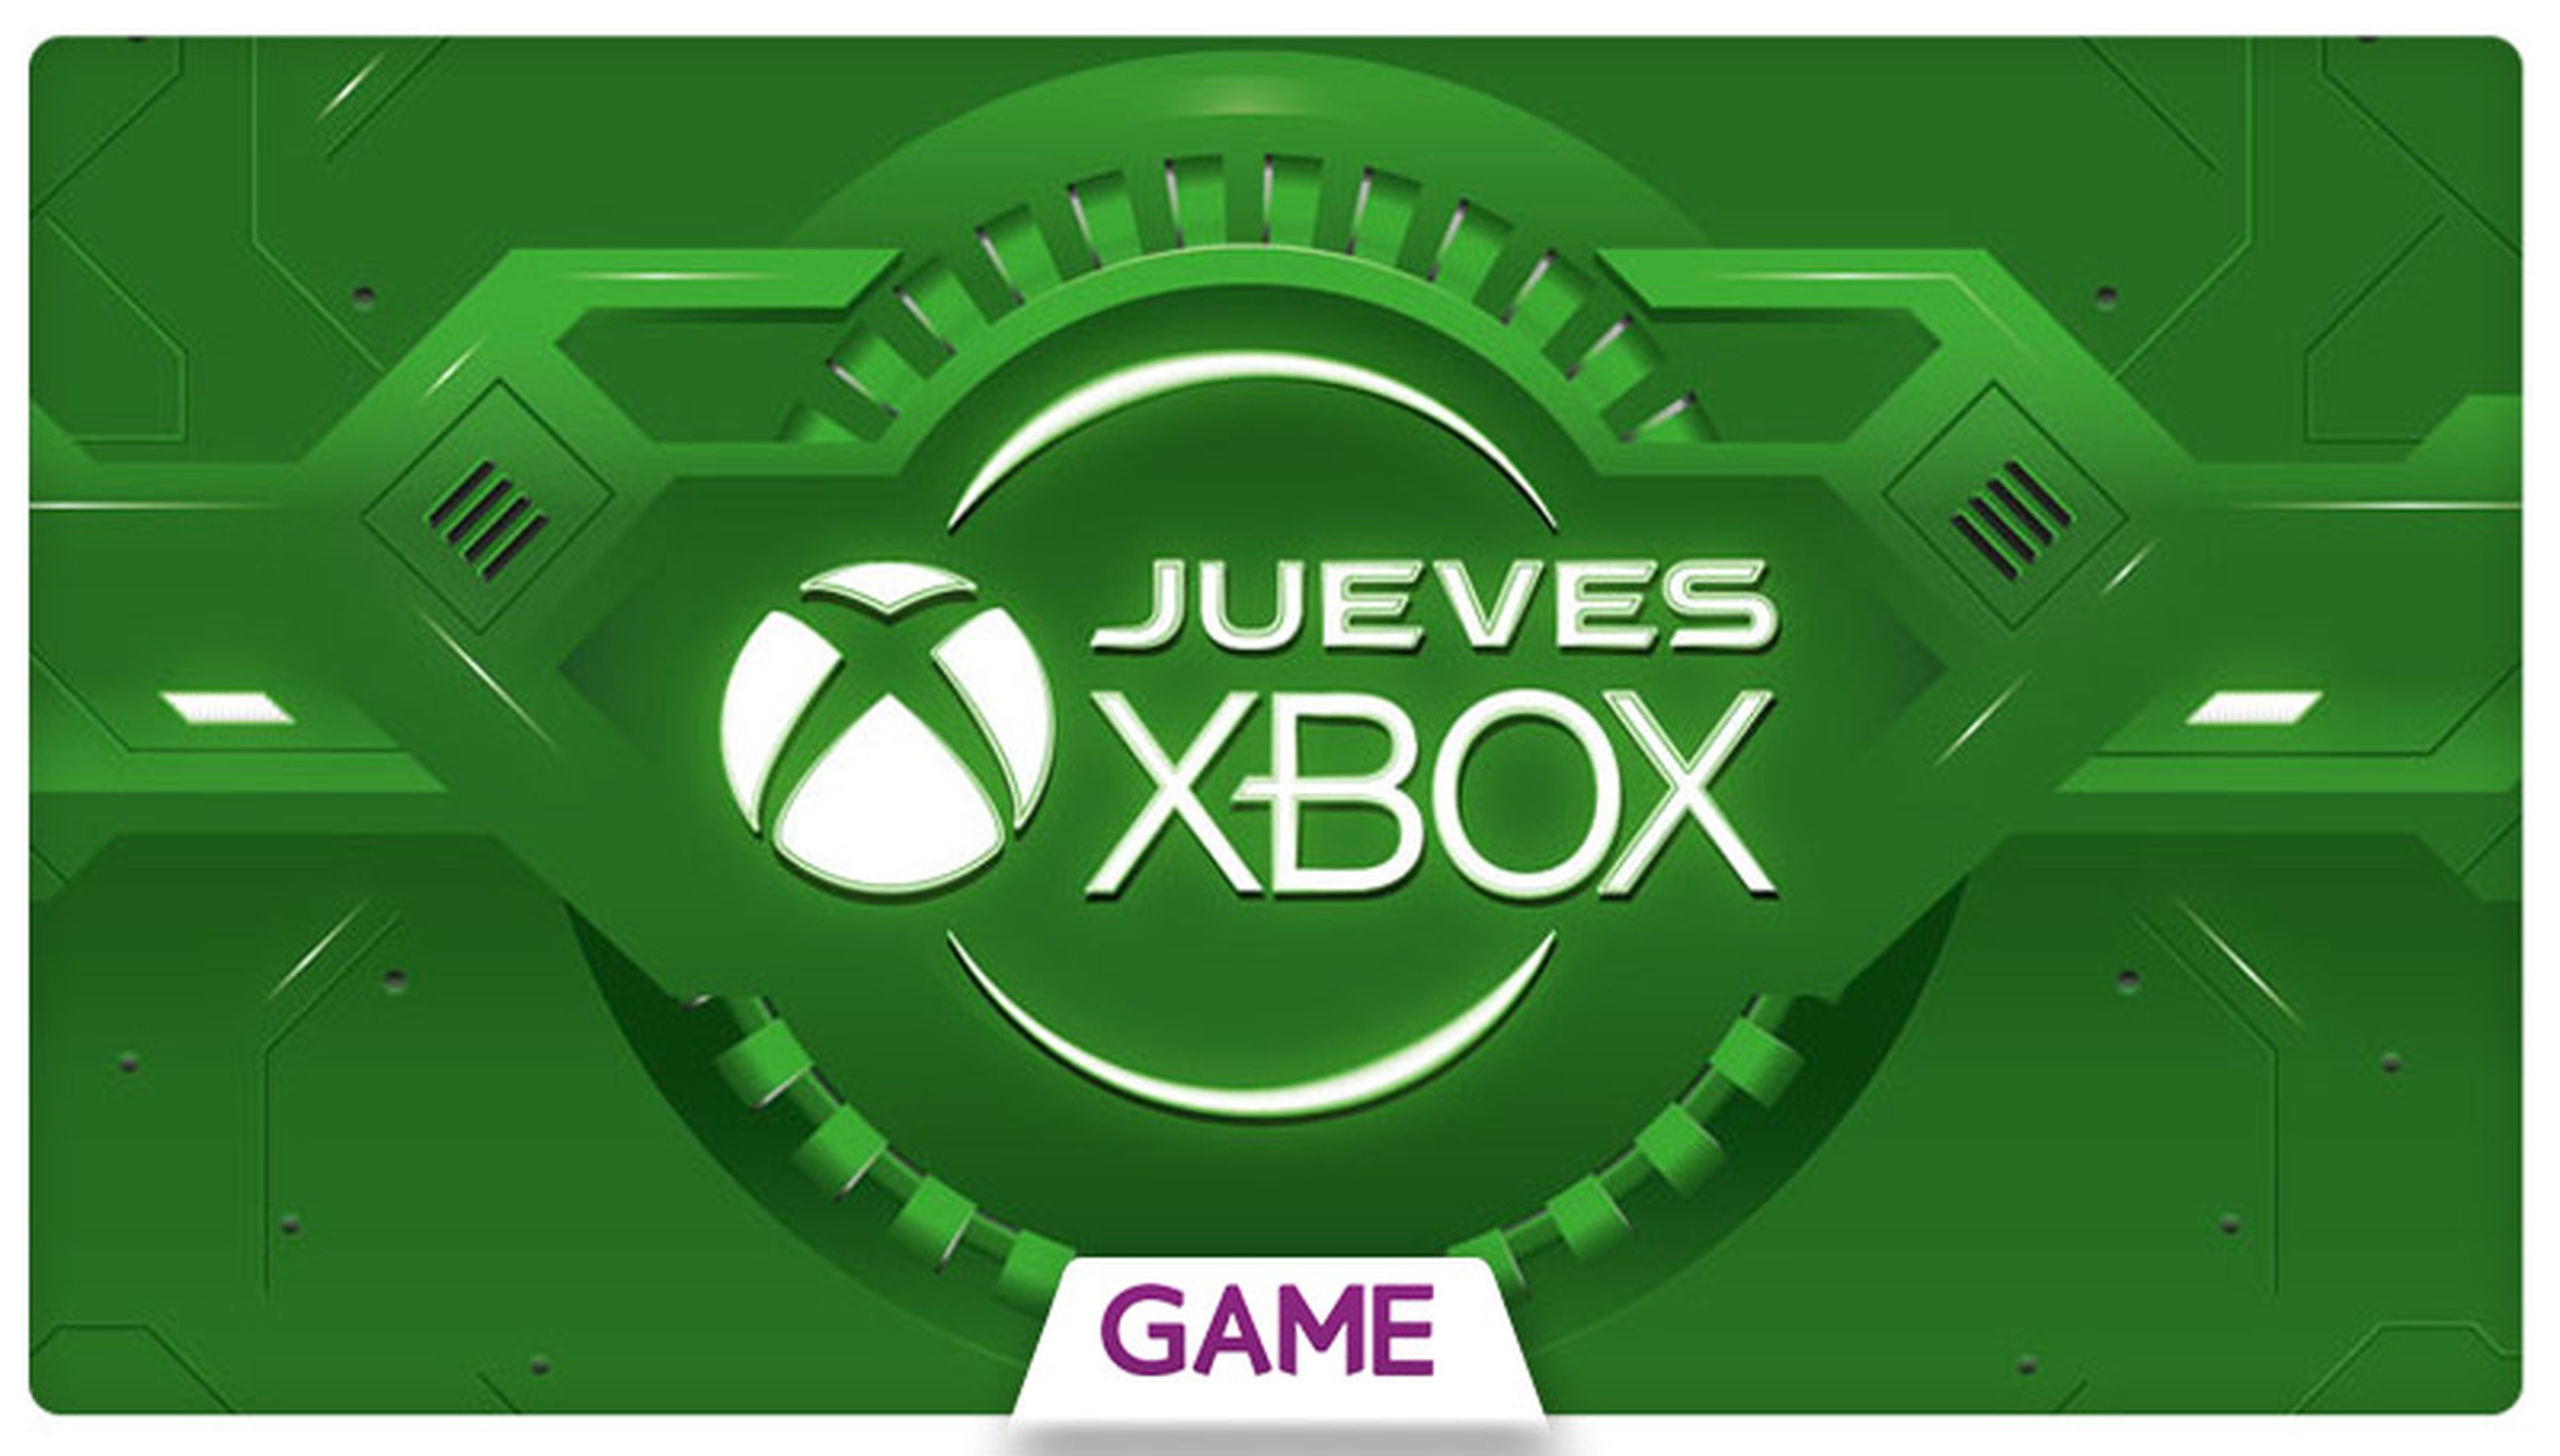 Jueves Xbox en GAME: Ofertas del 19/11/2015